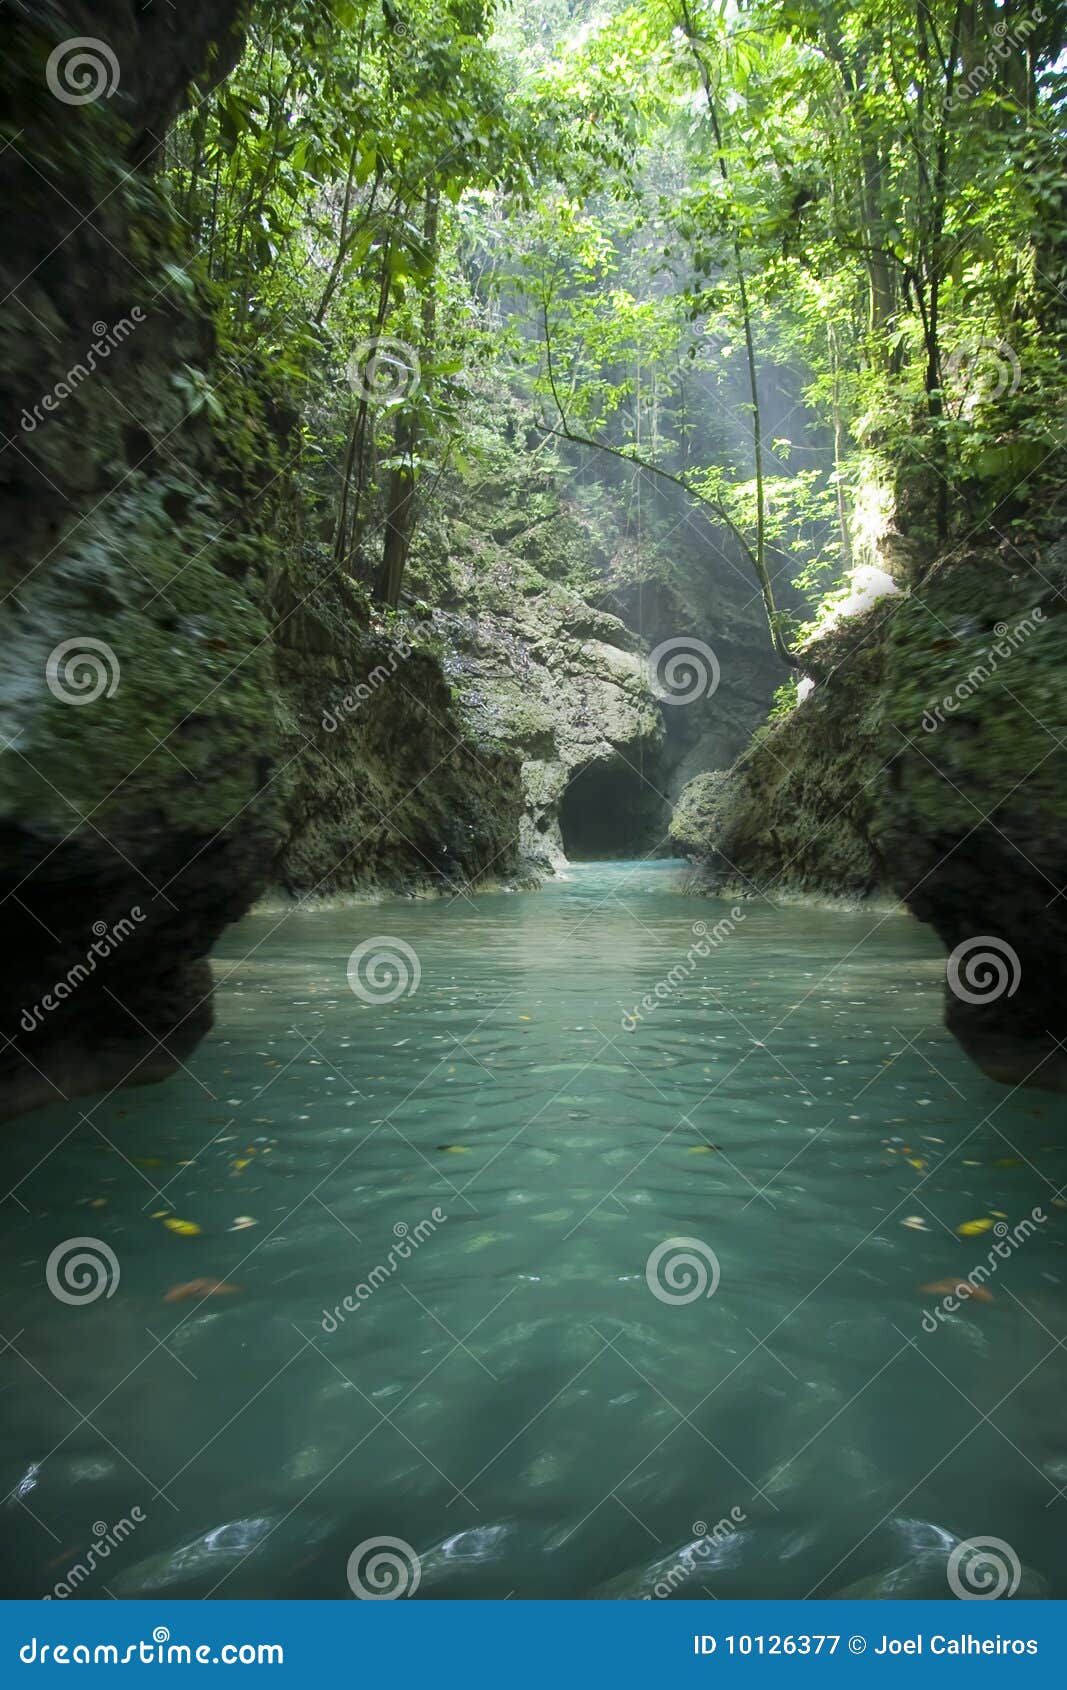 jamaica river